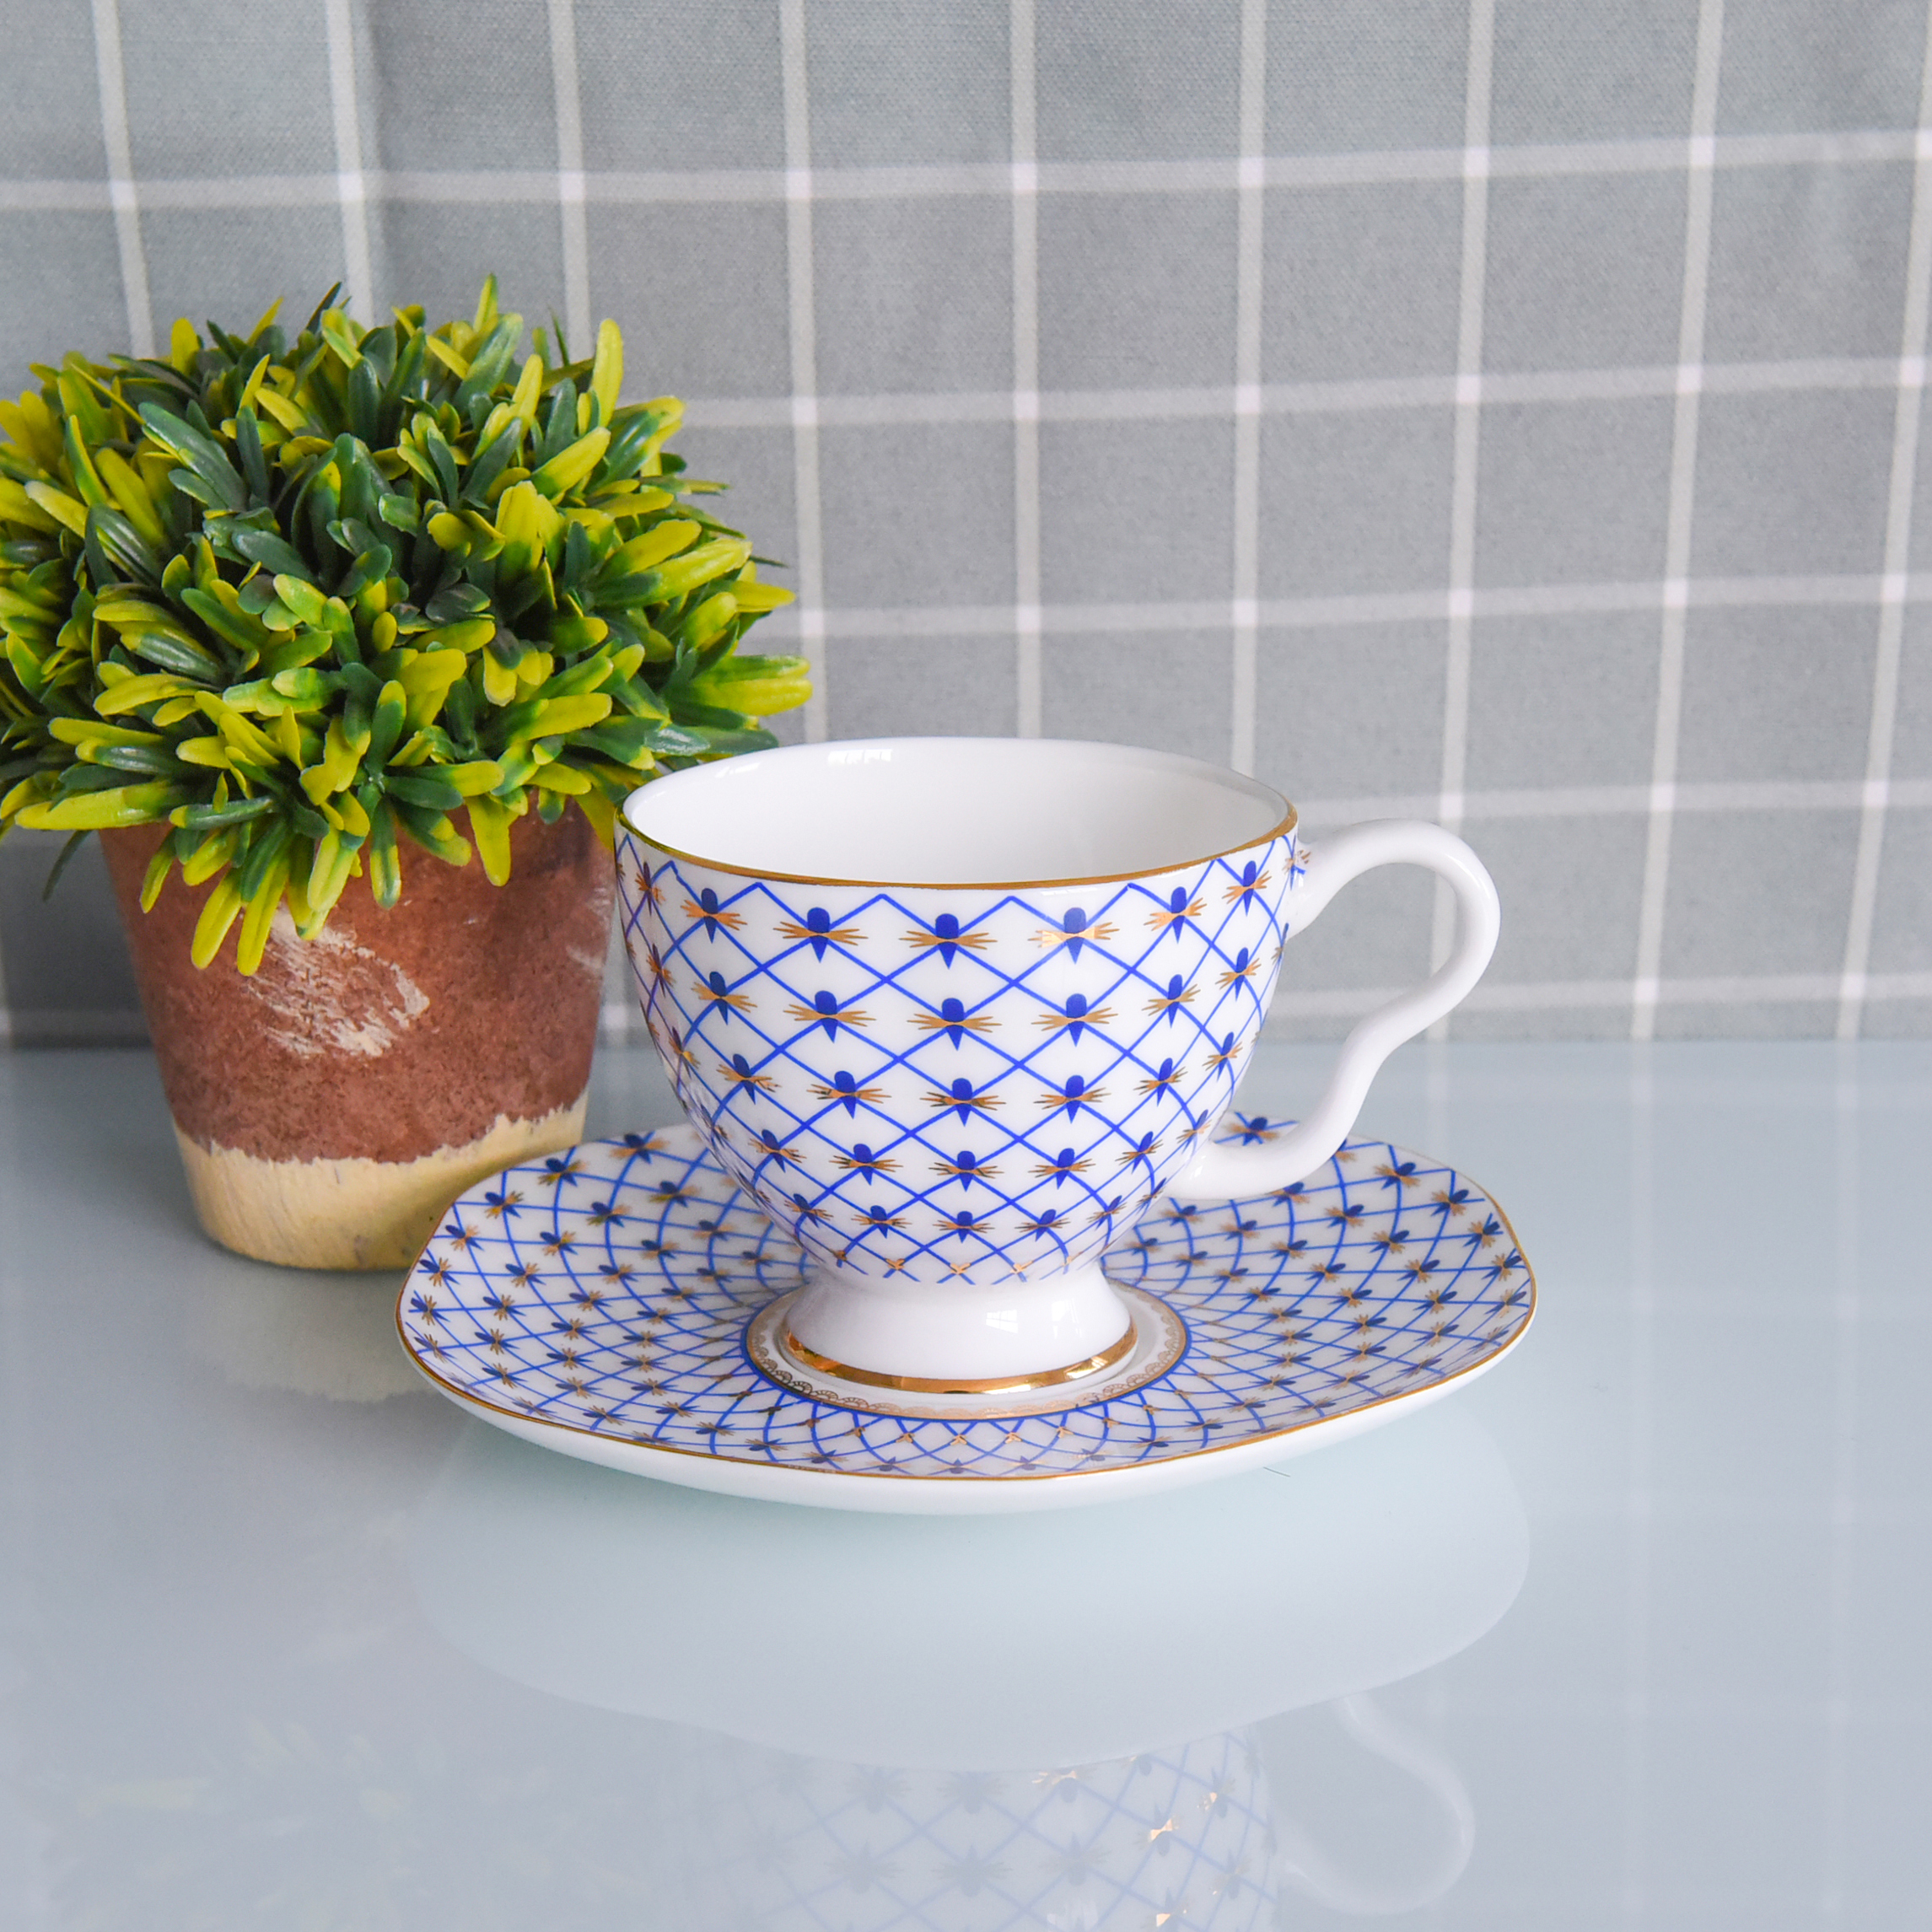 唐山达美瓷业陶瓷花茶杯下午茶用杯金边骨瓷咖啡杯碟